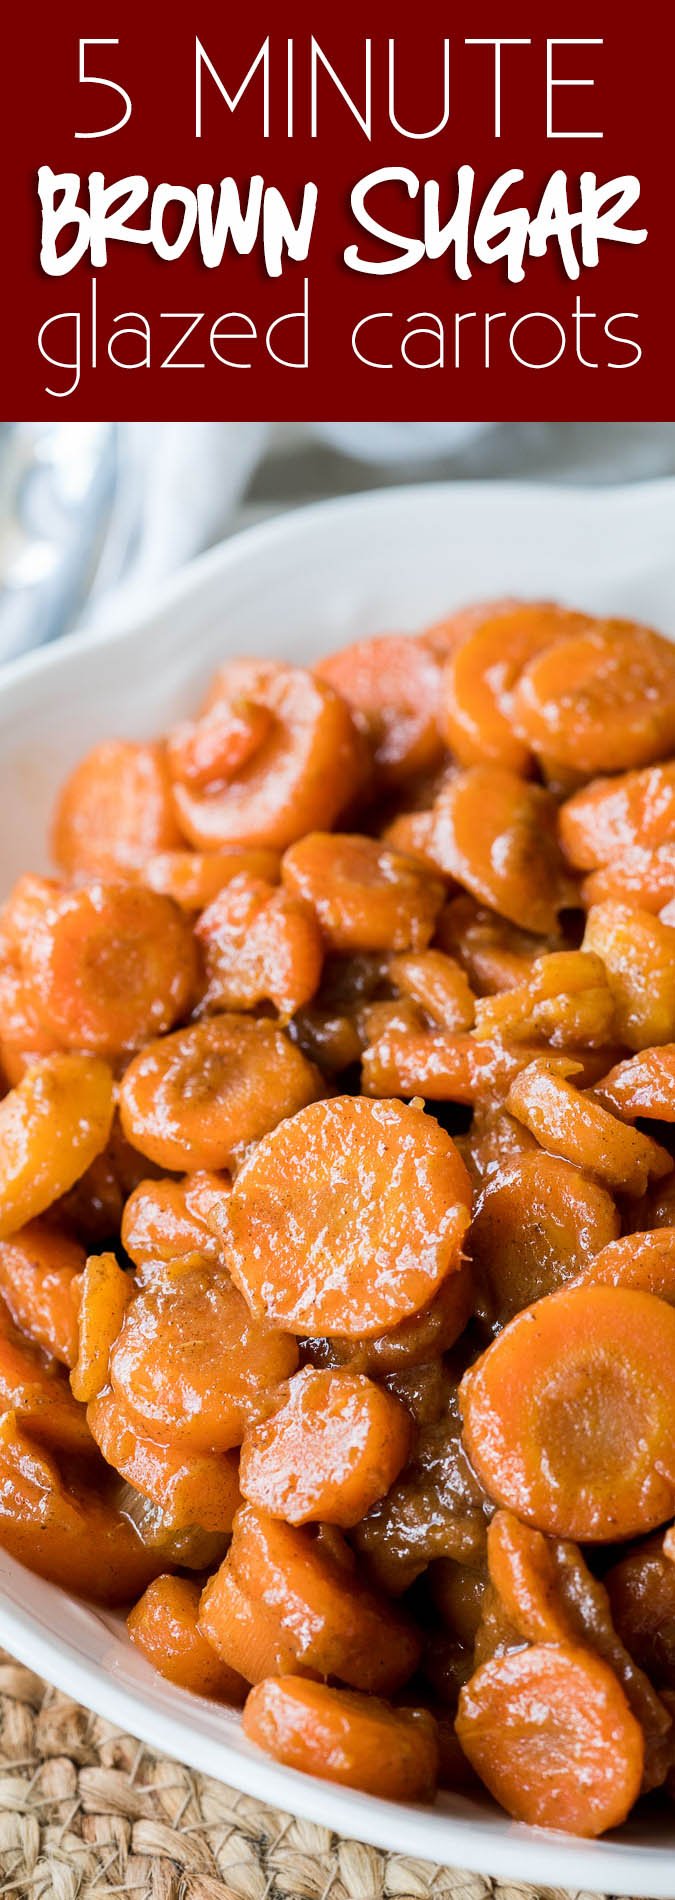 deze geglazuurde wortelen met bruine suiker worden in slechts 5 minuten gemaakt met slechts 5 eenvoudige ingrediënten! Perfect voor een snelle Thanksgiving bijgerecht!